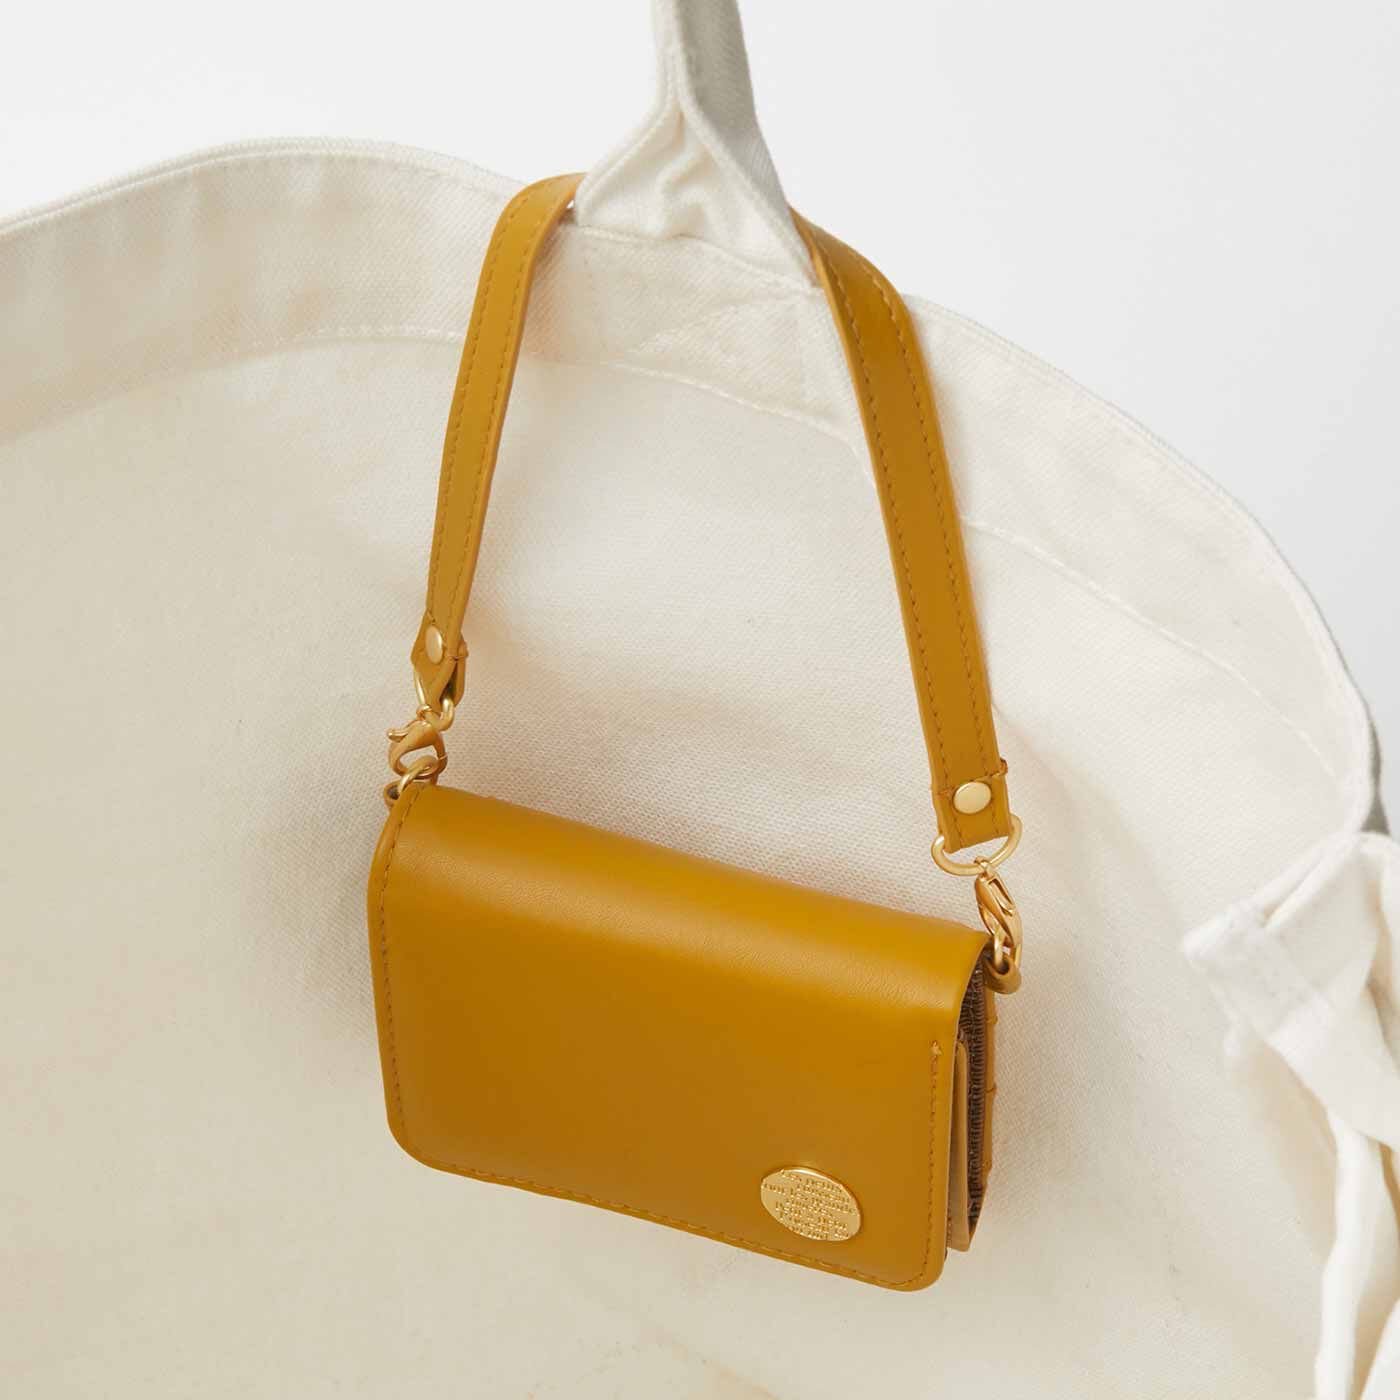 フェリシモの雑貨 Kraso|最小限をつれてって しあわせはちみつ色の三つ折り手のり財布|バッグの持ち手にもつるせます。